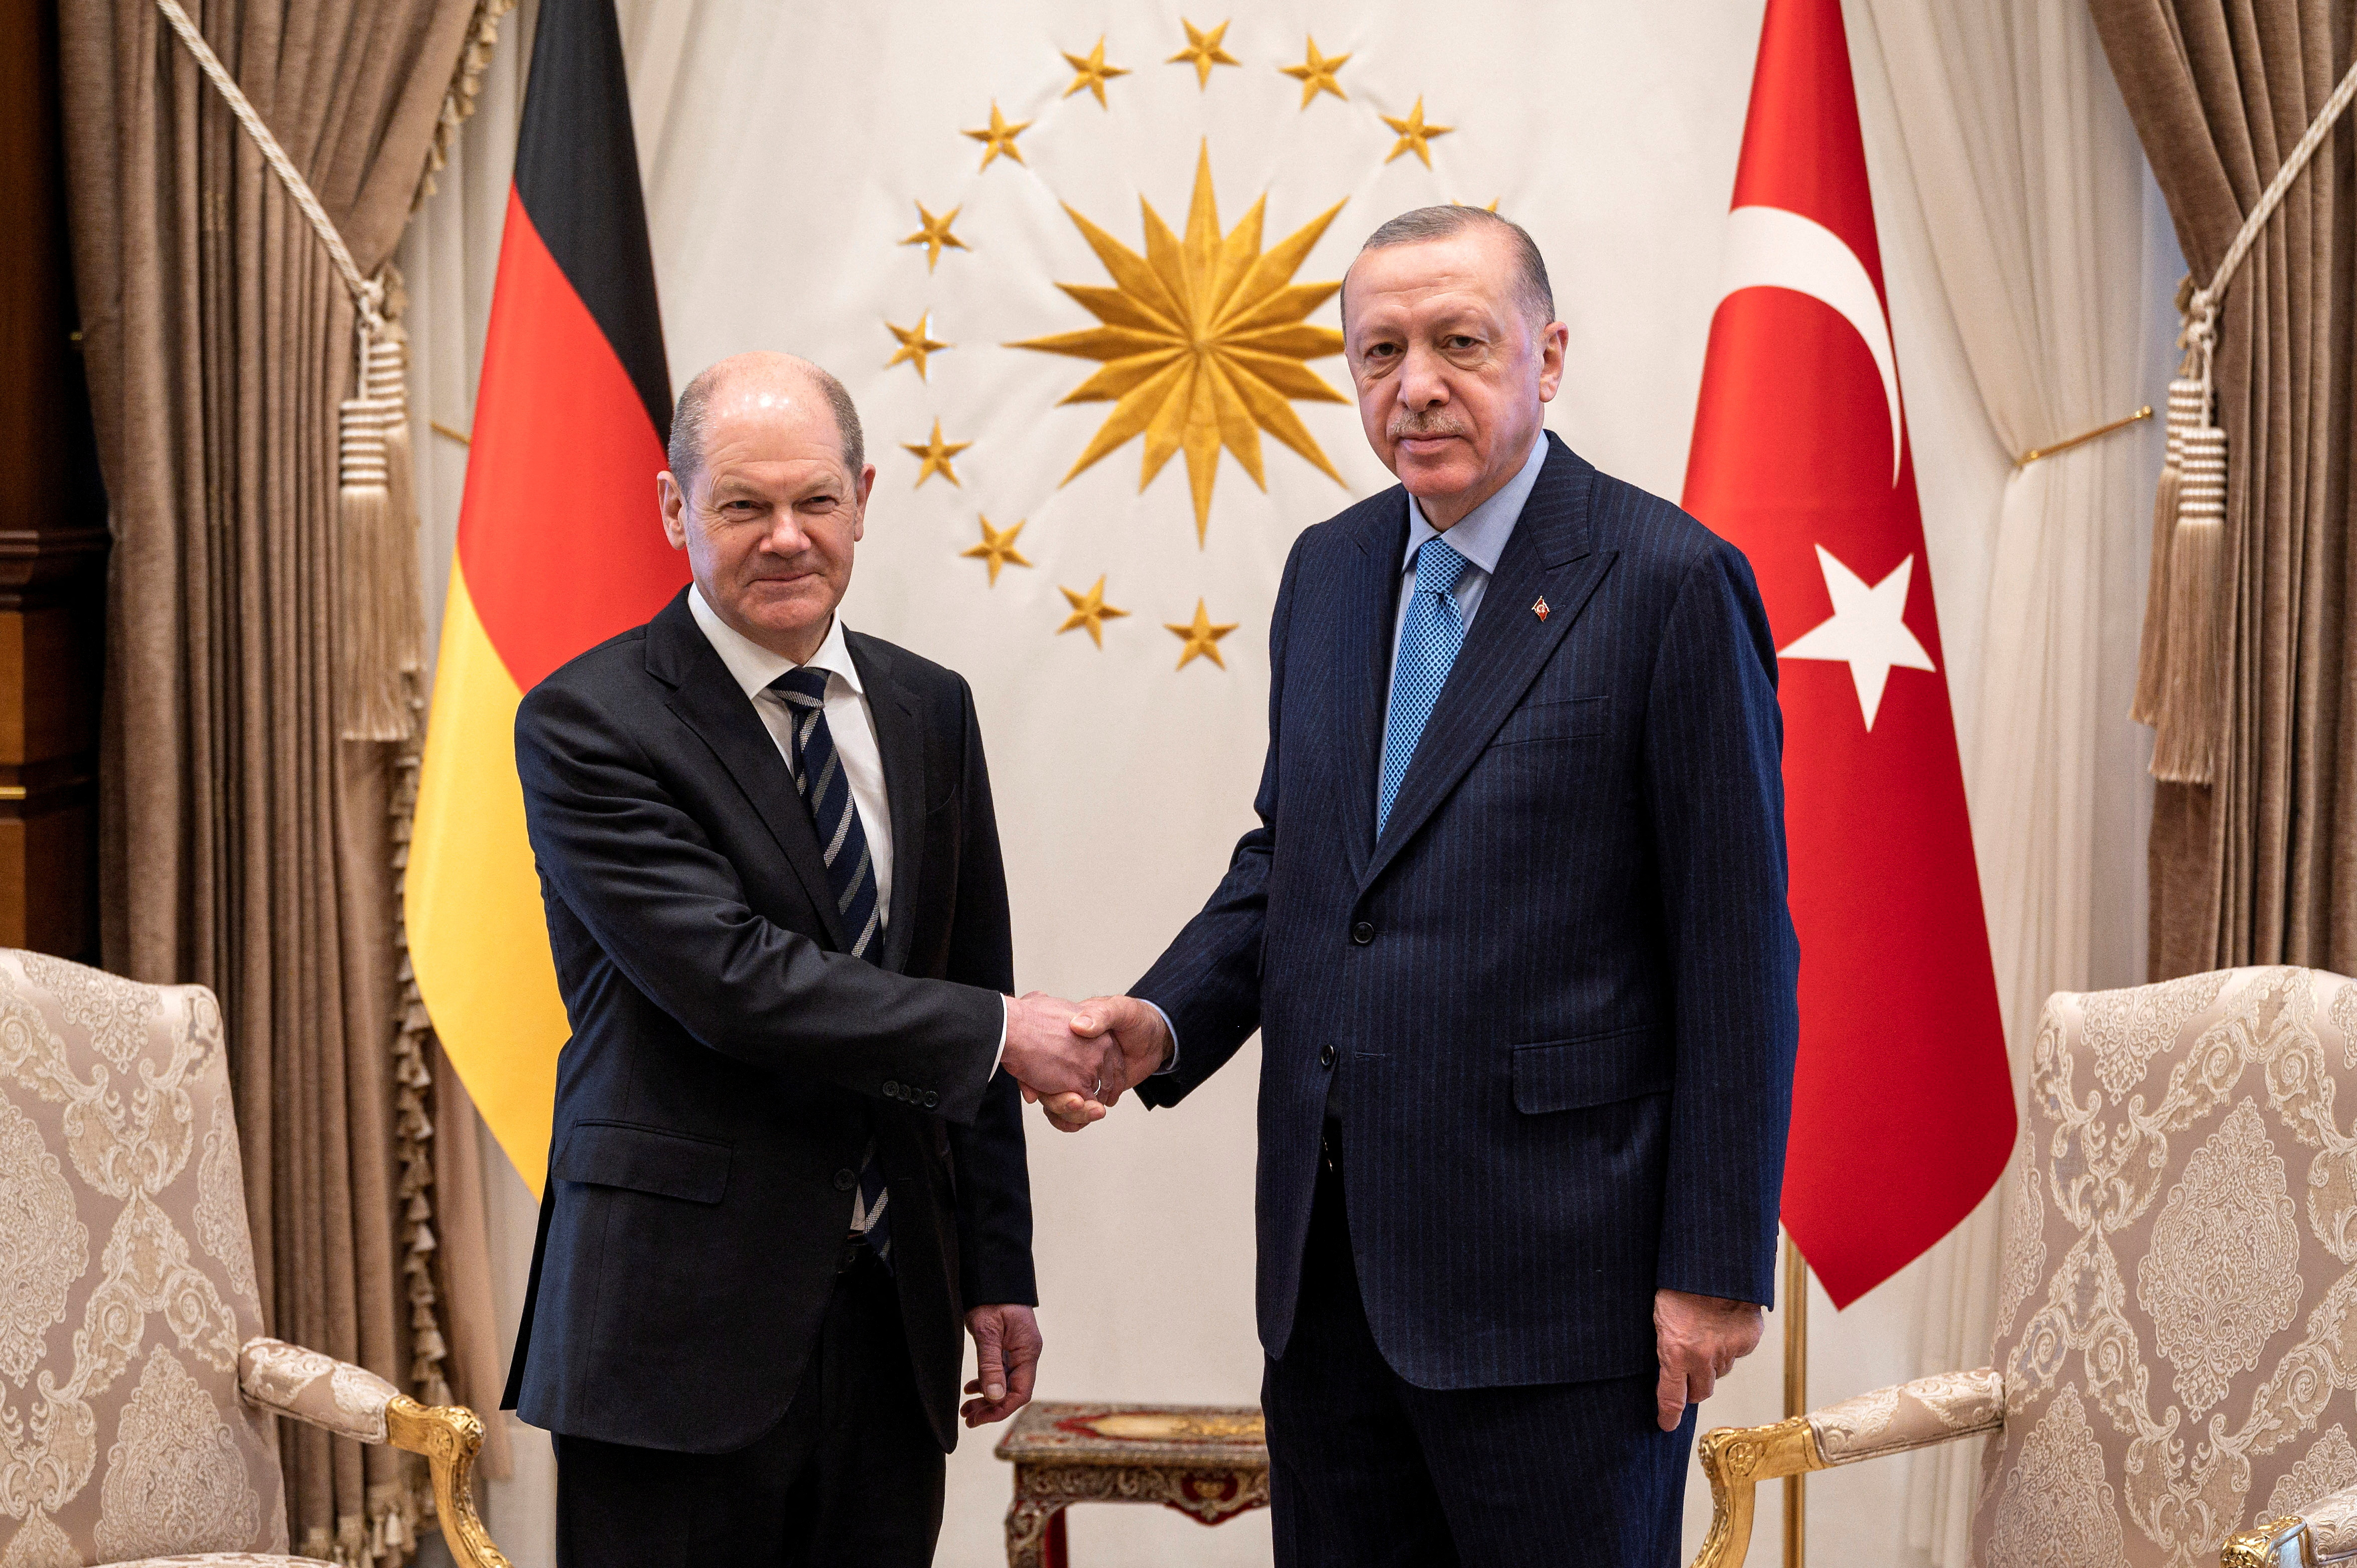 El canciller alemán Schulz se reúne con el presidente turco Erdogan en Ankara